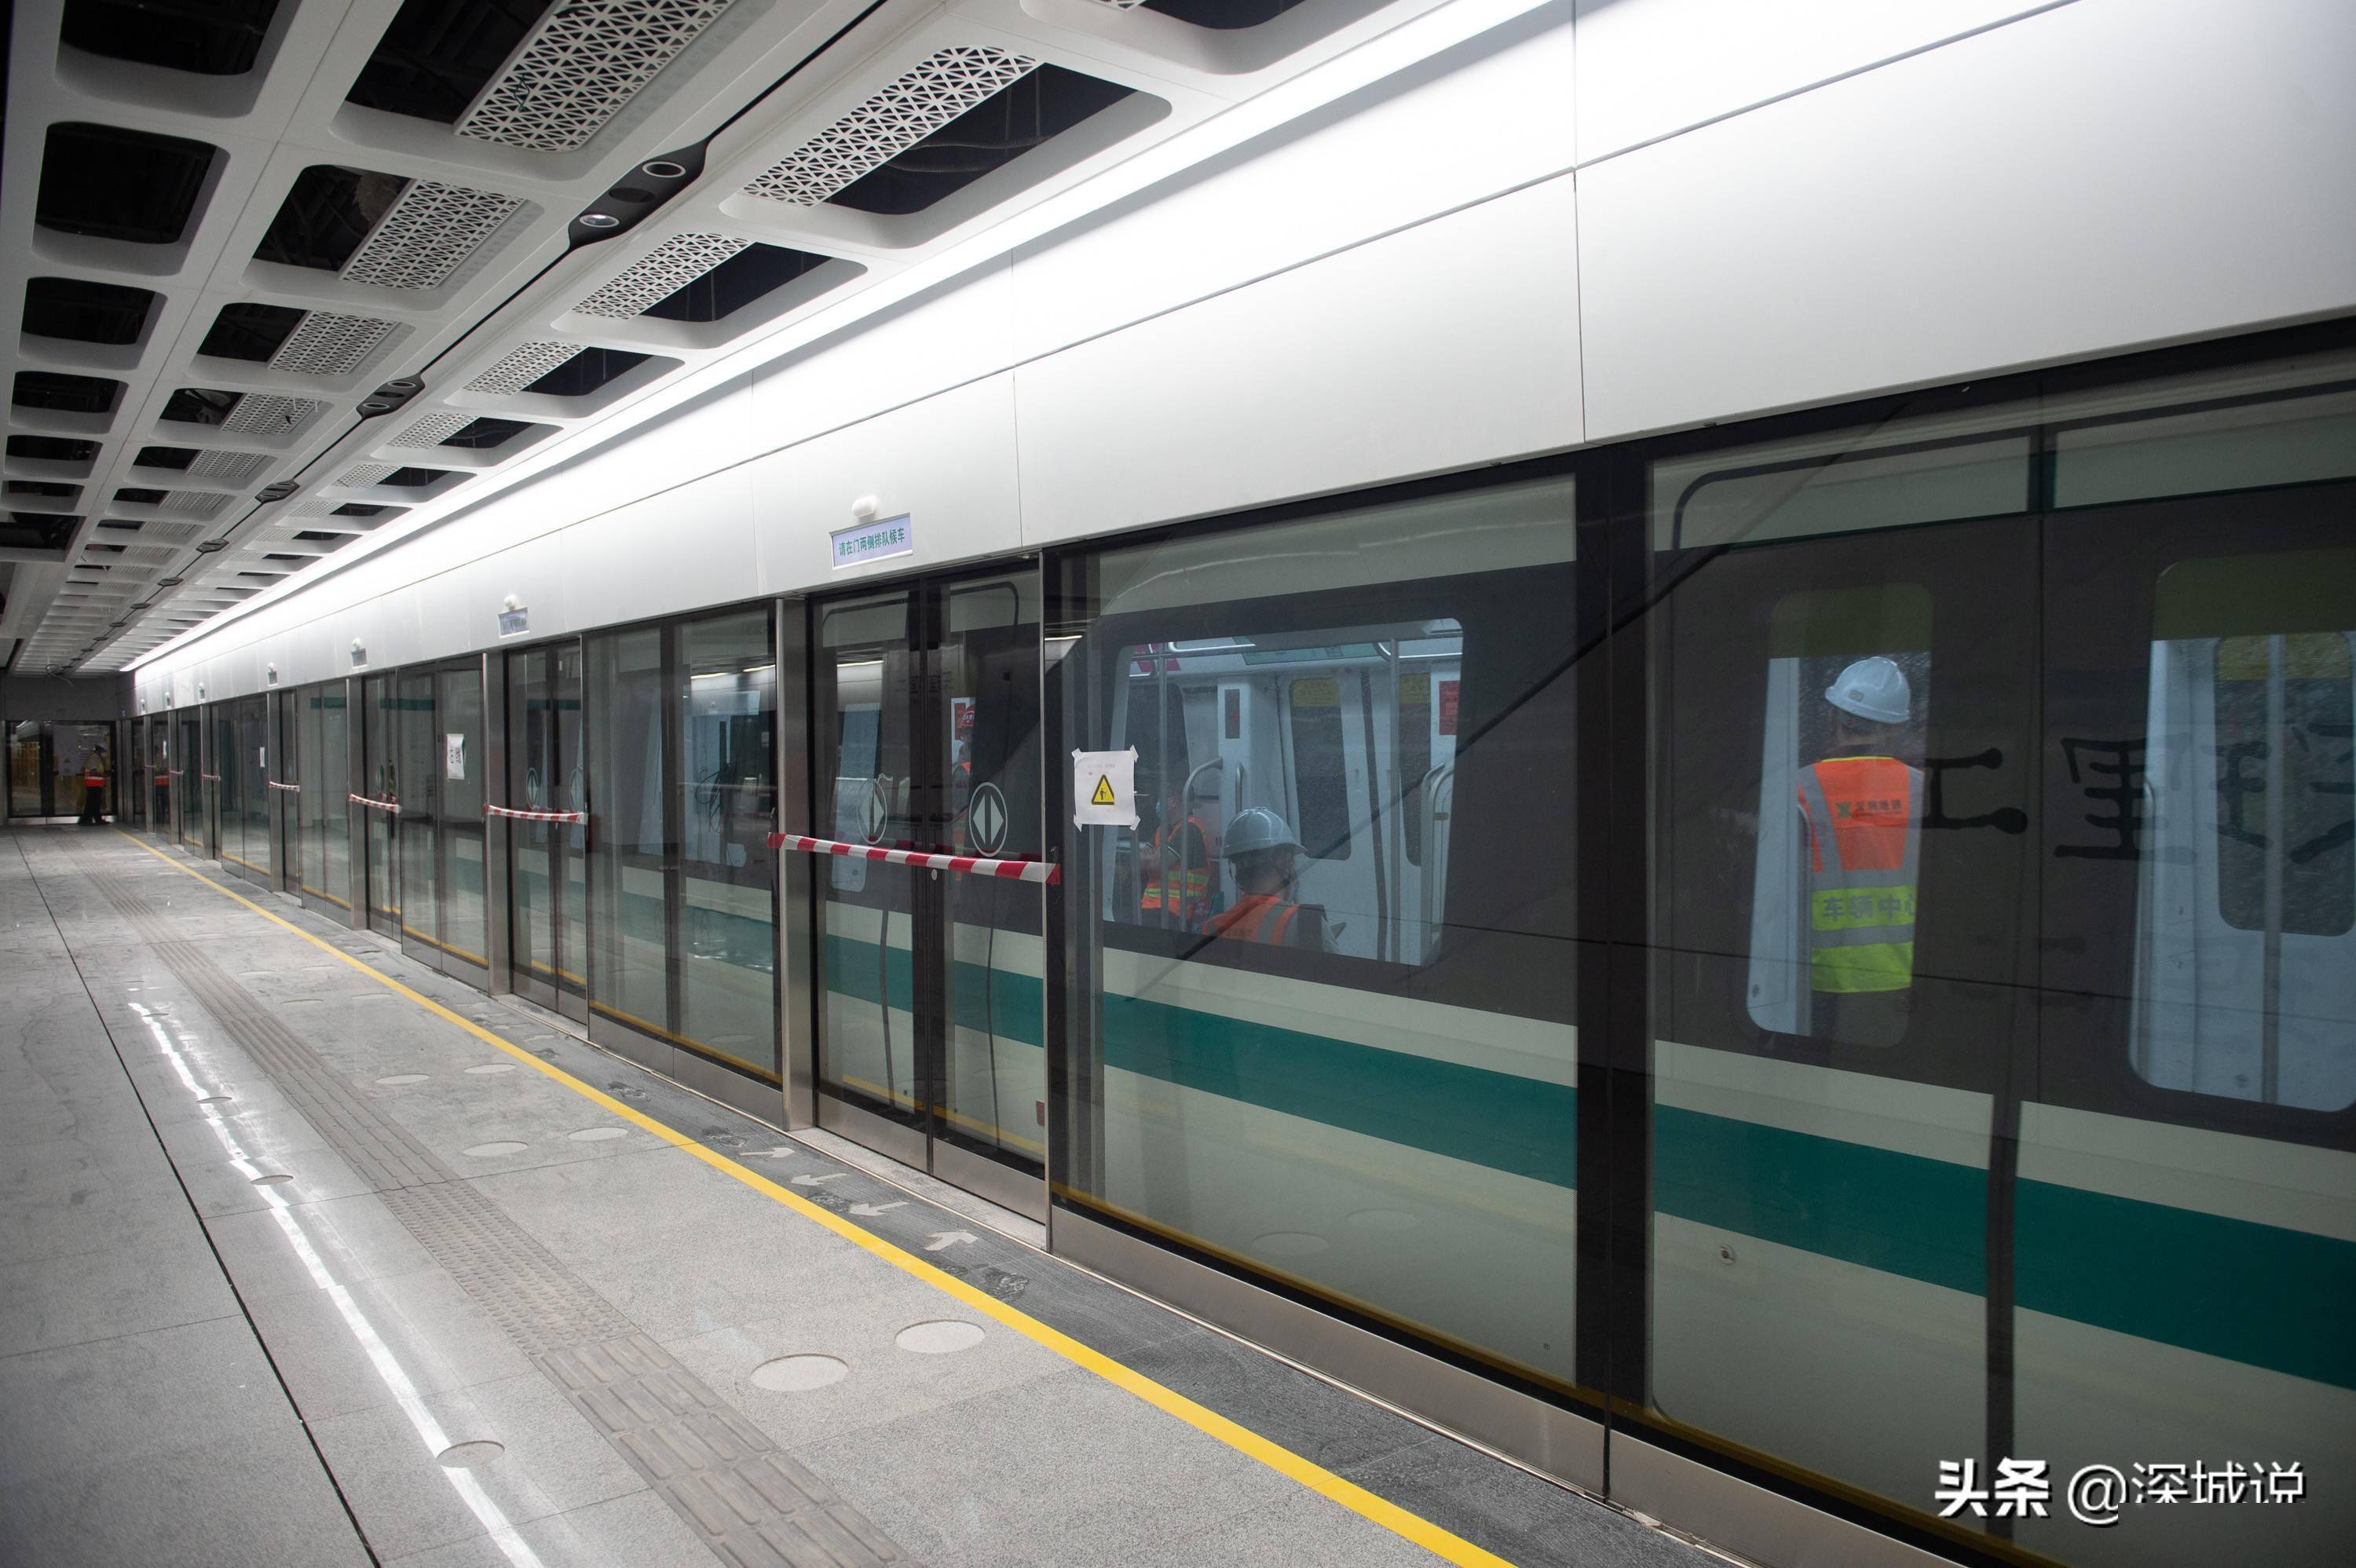 深圳地铁6号线支线有啥亮点?车厢内可以无线充电啦